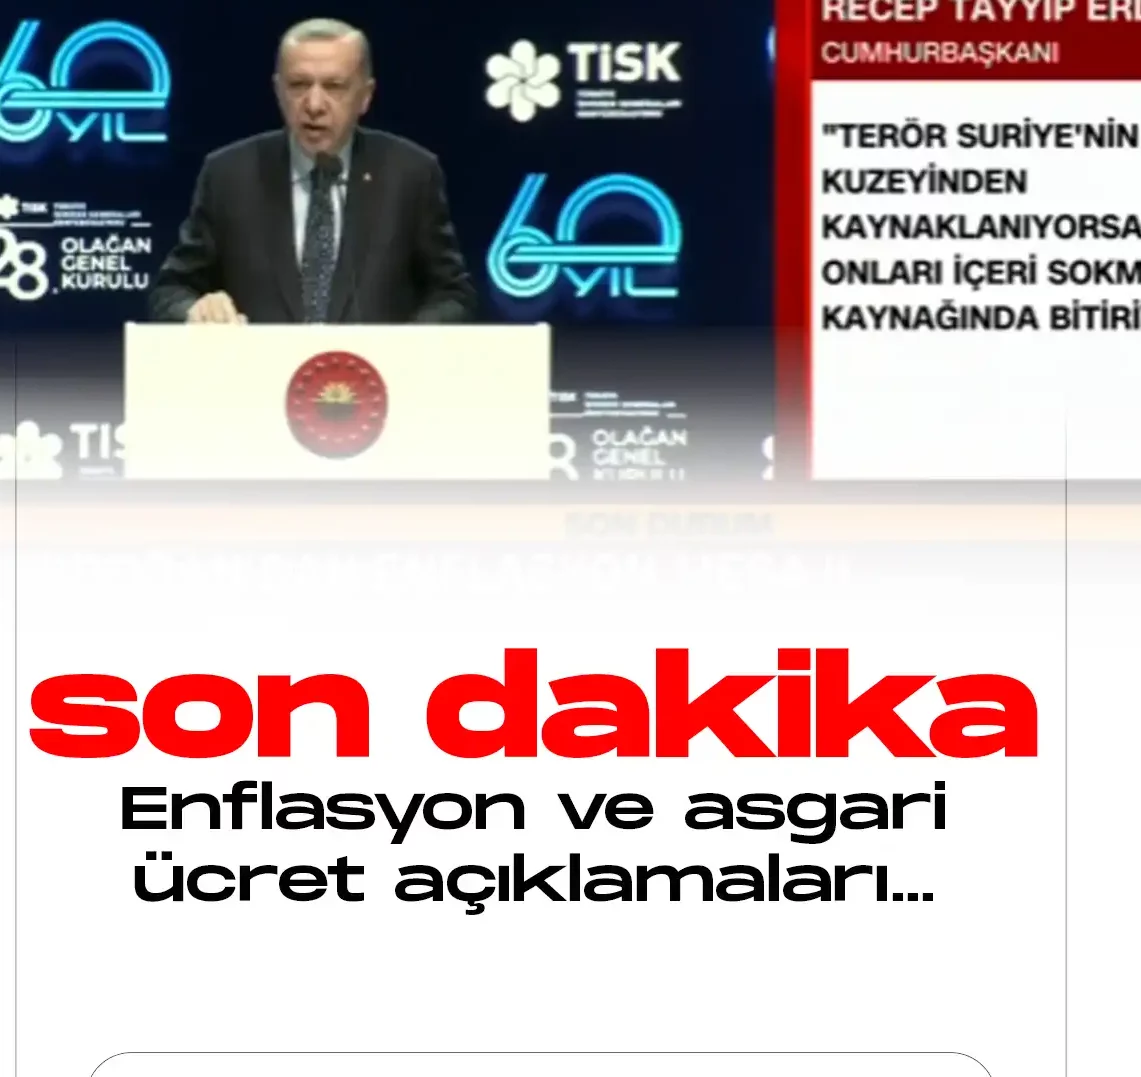 Cumhurbaşkanı Erdoğan asgari ücret ve enflasyon konusunda son dakika açıklamaları yapıyor.